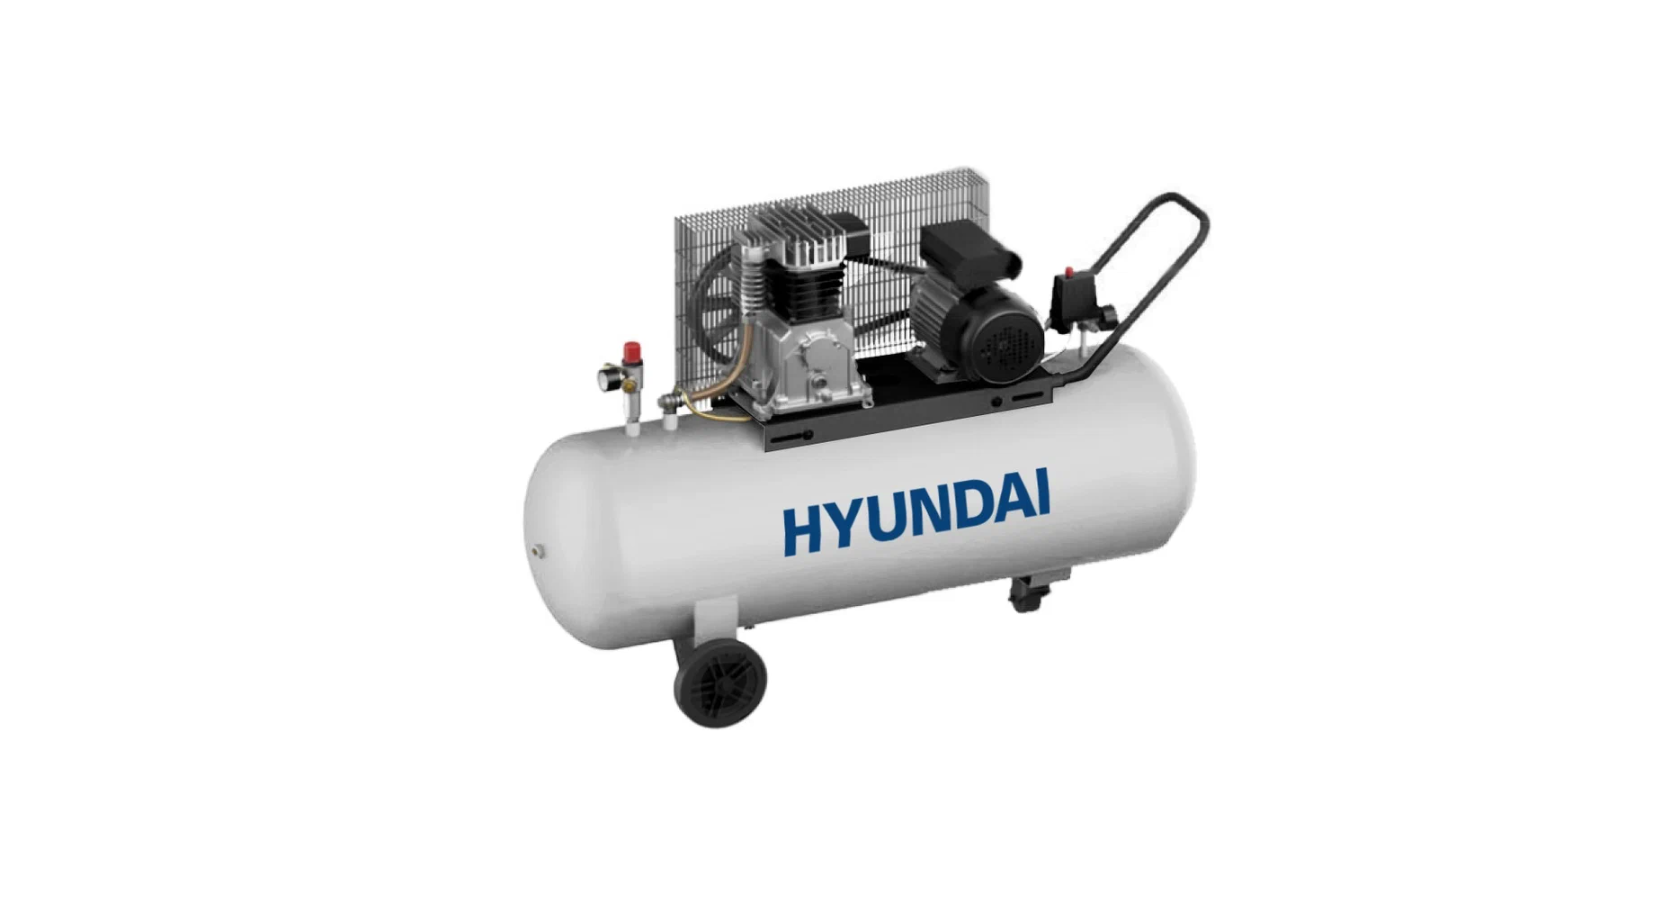 Воздушный компрессор Hyundai масляный HYC 40200-3BD